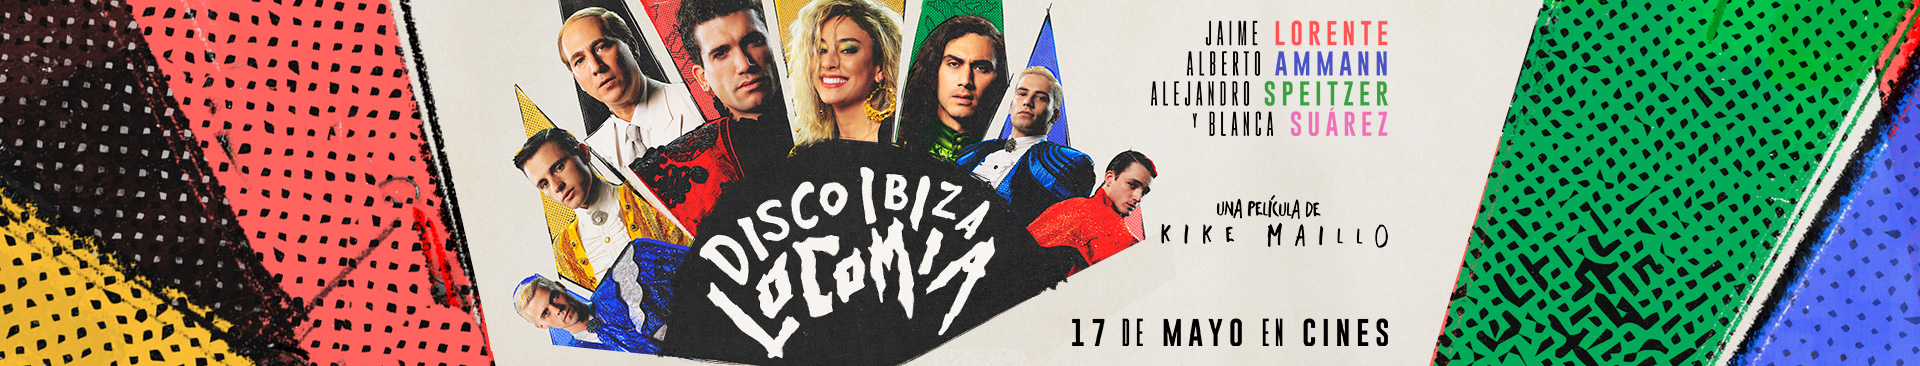 Disco, Ibiza, Locomía